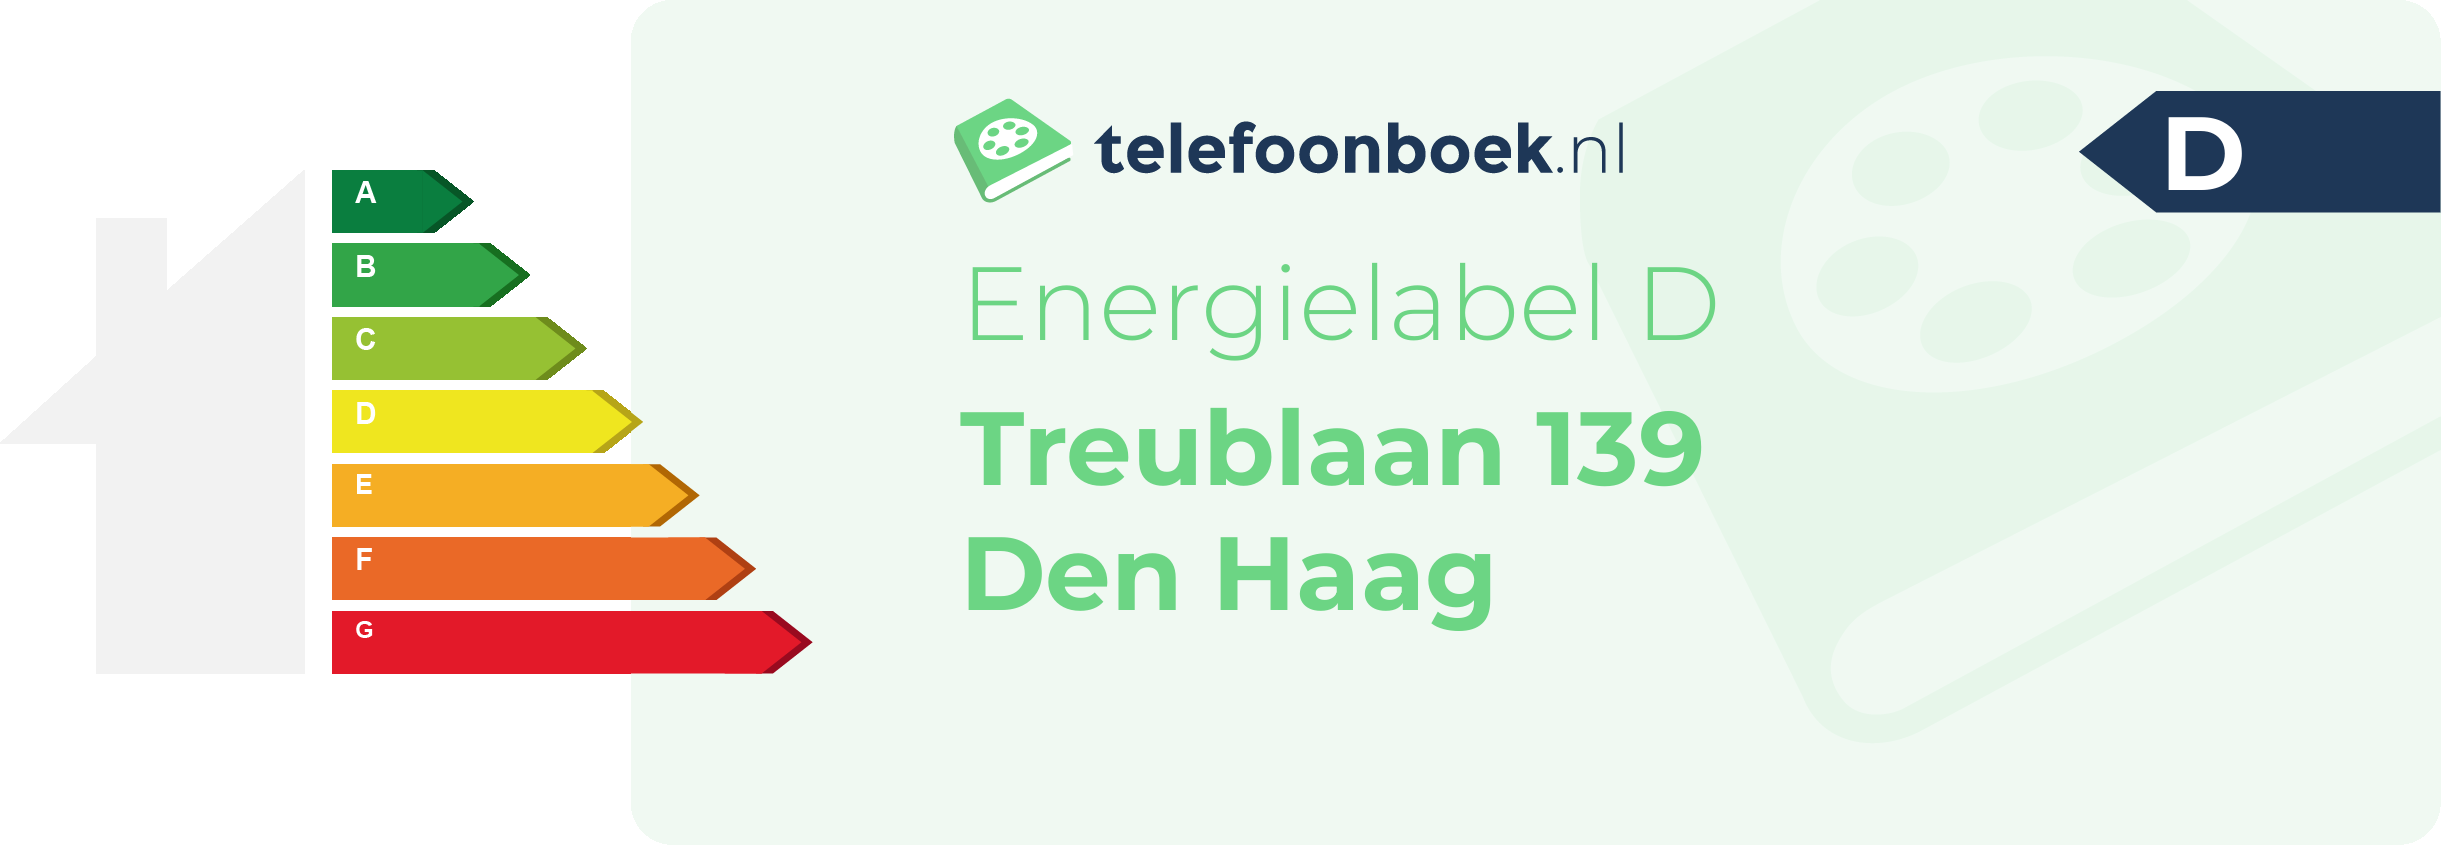 Energielabel Treublaan 139 Den Haag